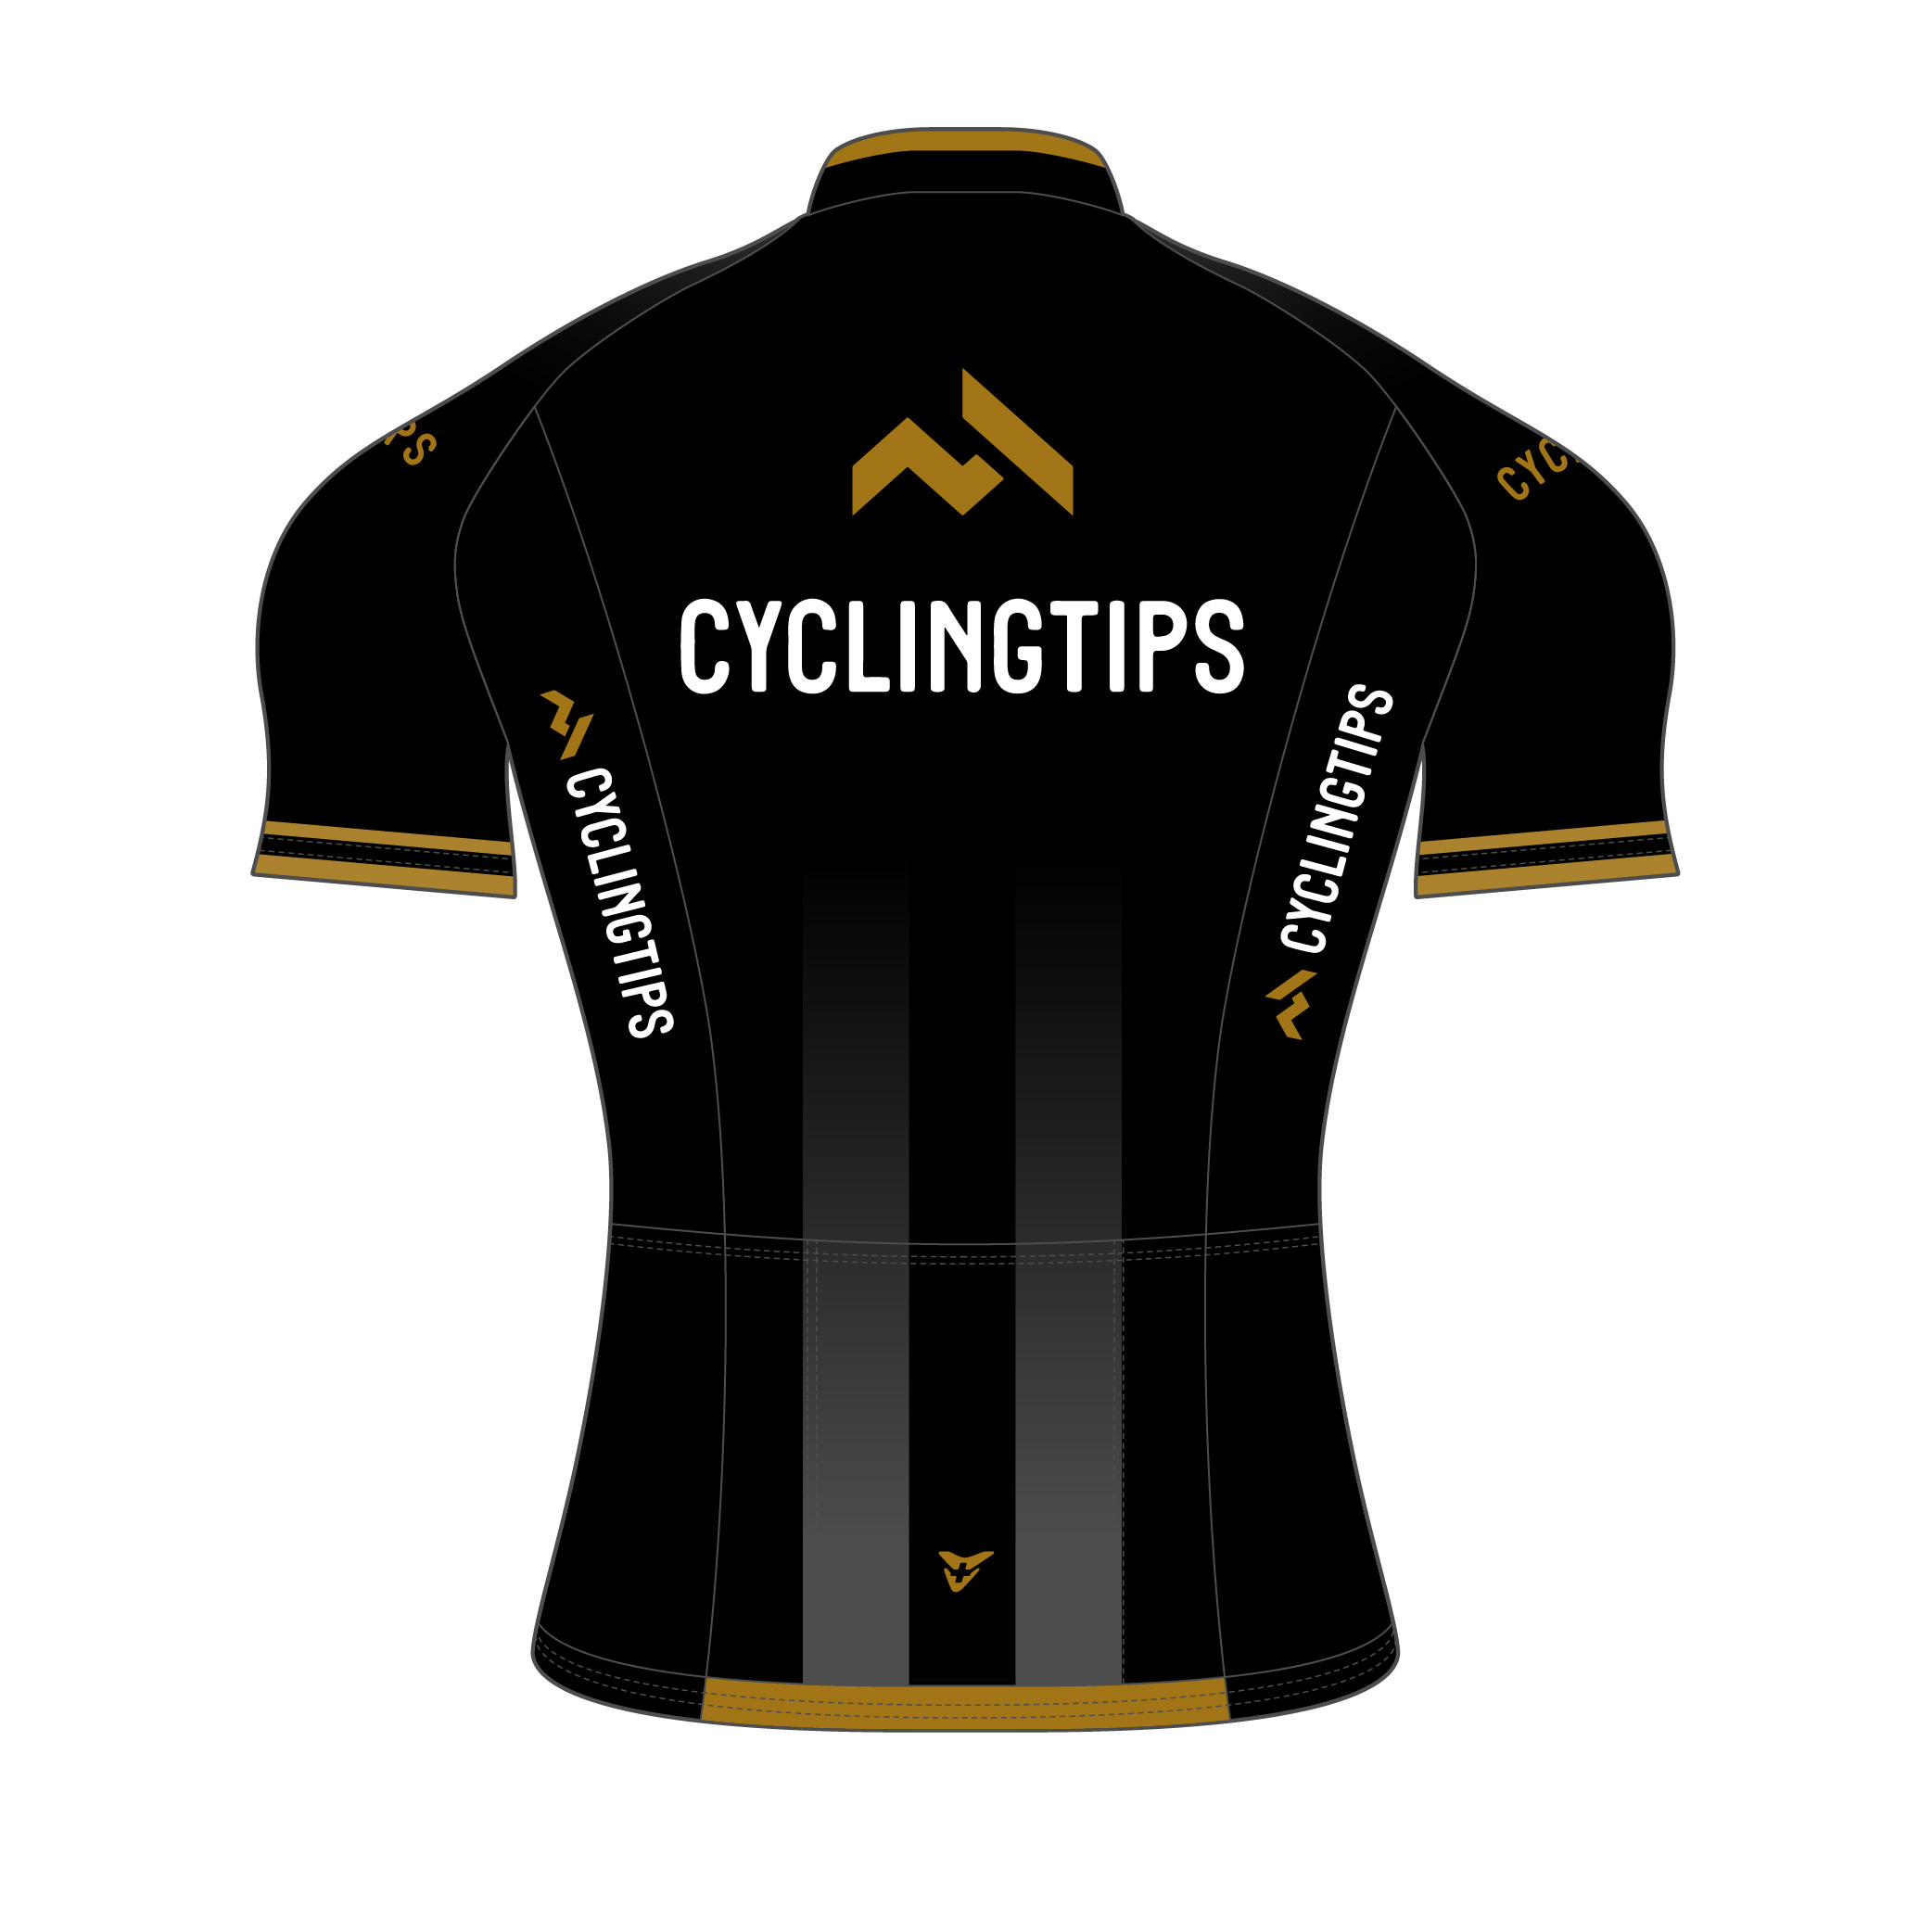 cycling-tips-22-s-51-0010-black-gold-top-back-2.jpg